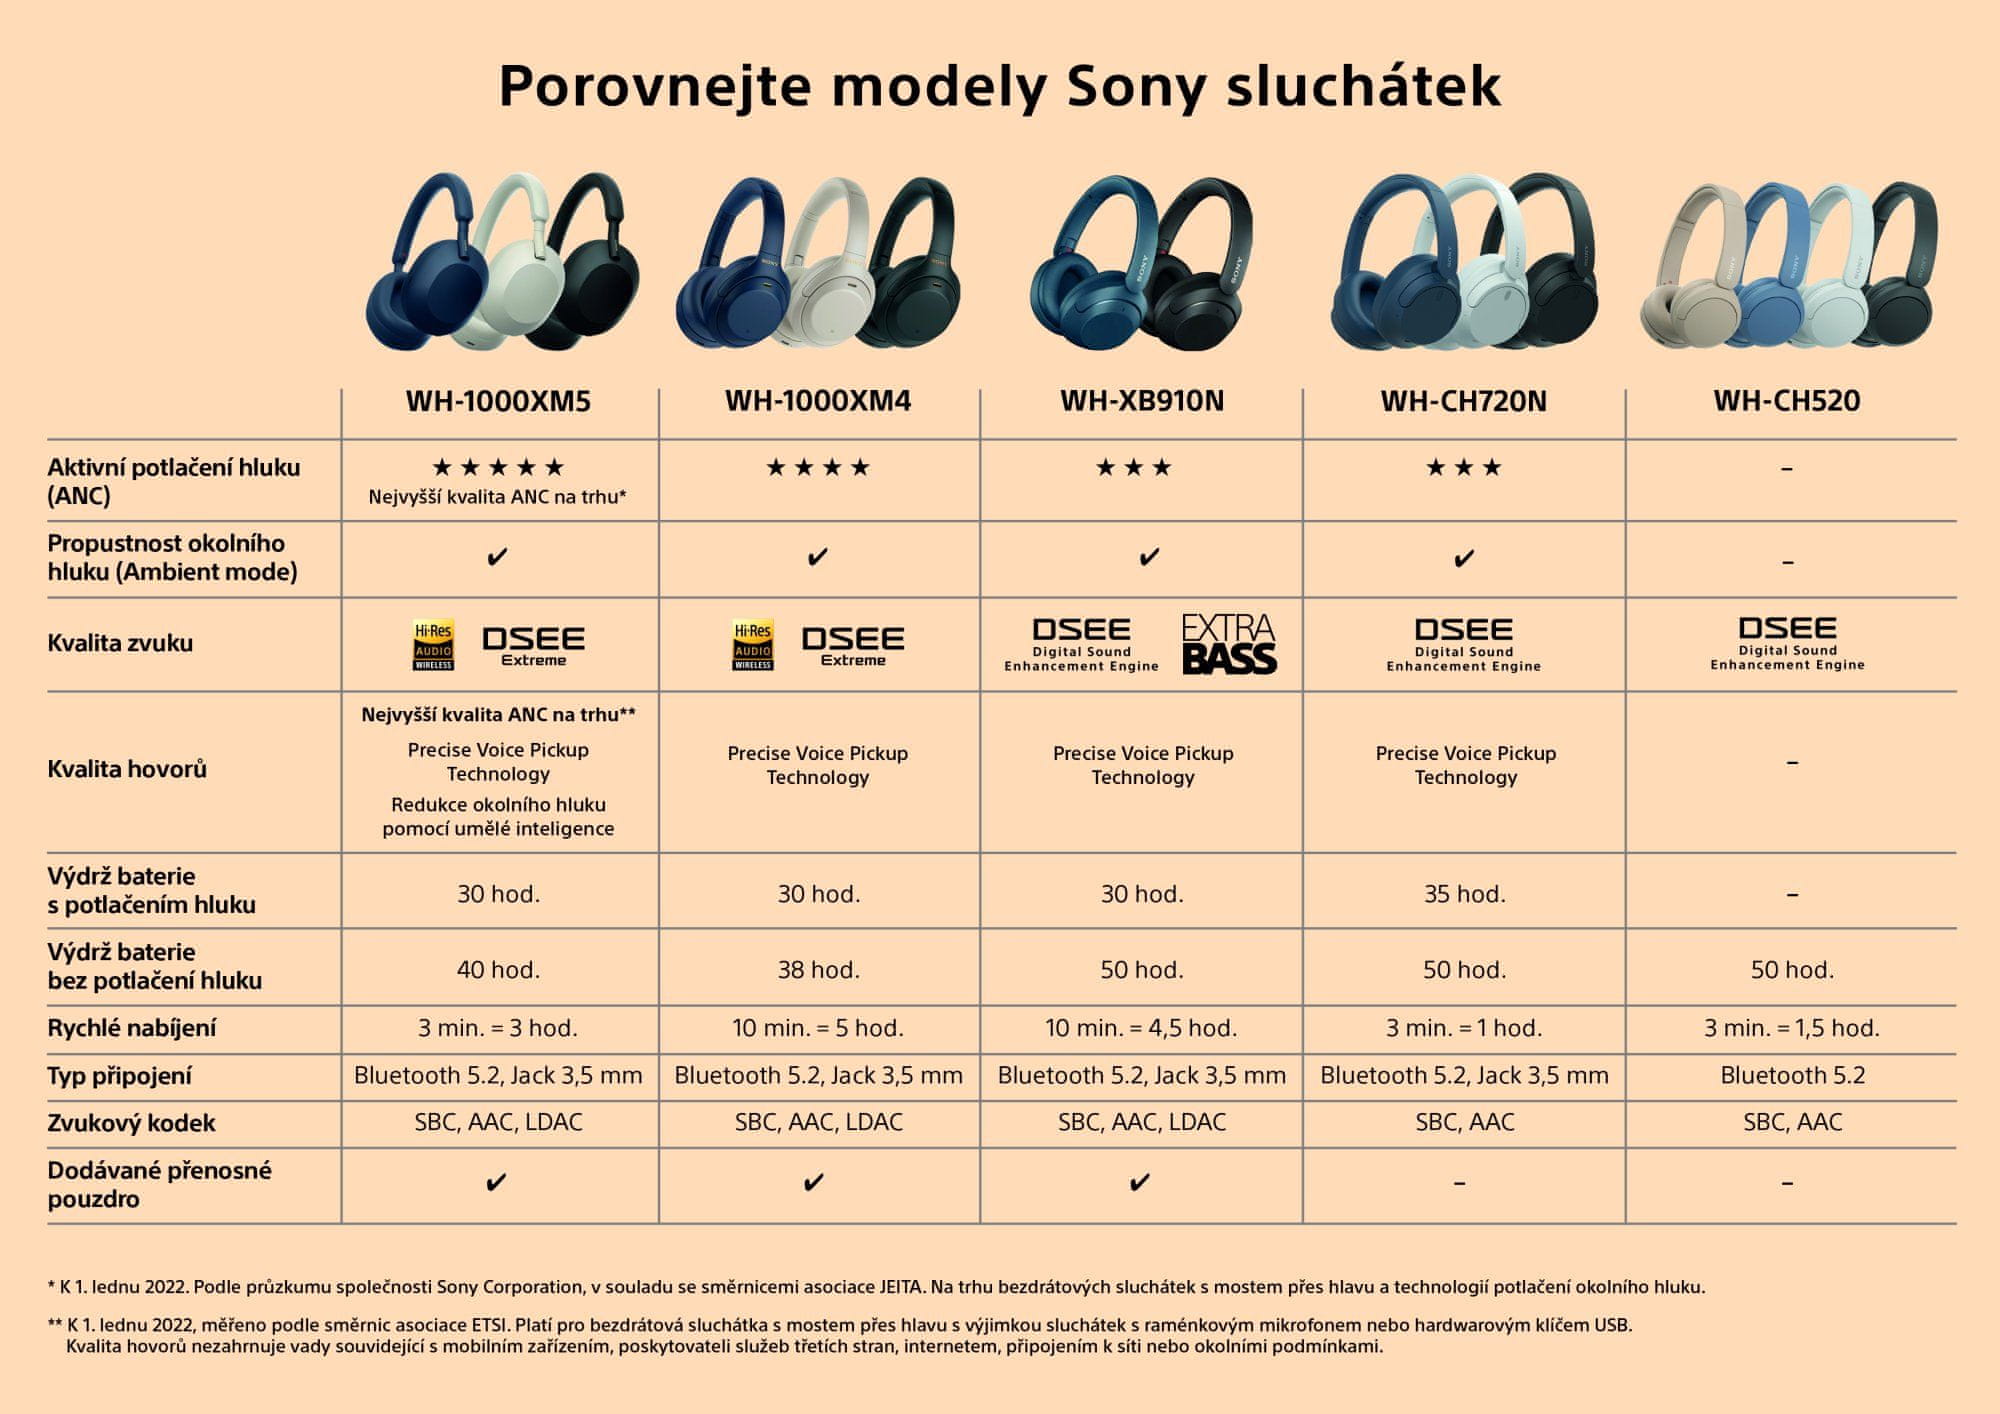 Sluchatka_srovnavaci_tabulka sluchátek Sony.jpg